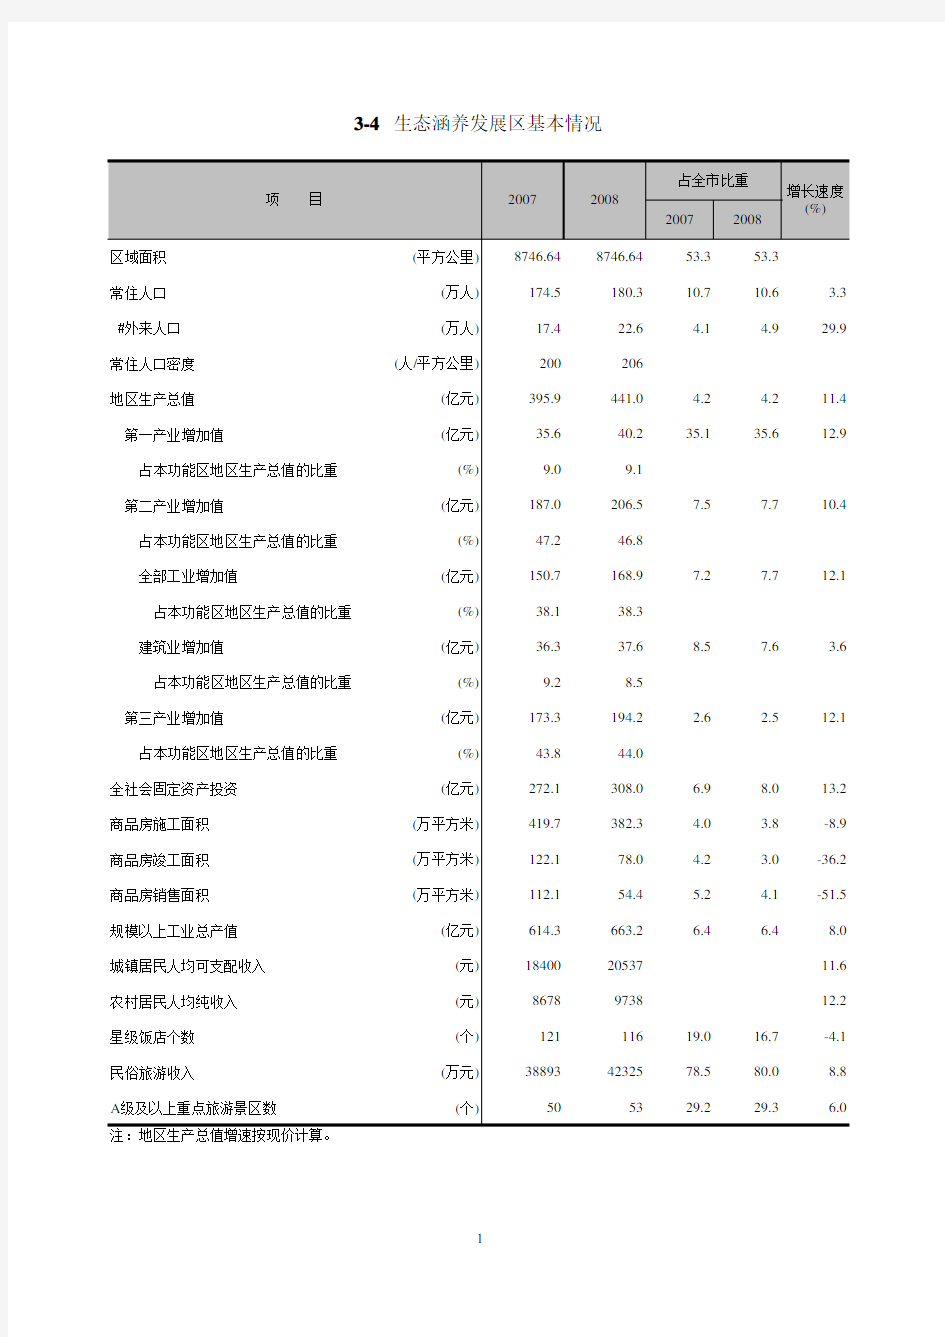 北京统计数据2009：北京市四大功能区_3-4生态涵养发展区基本情况(2007-2008)